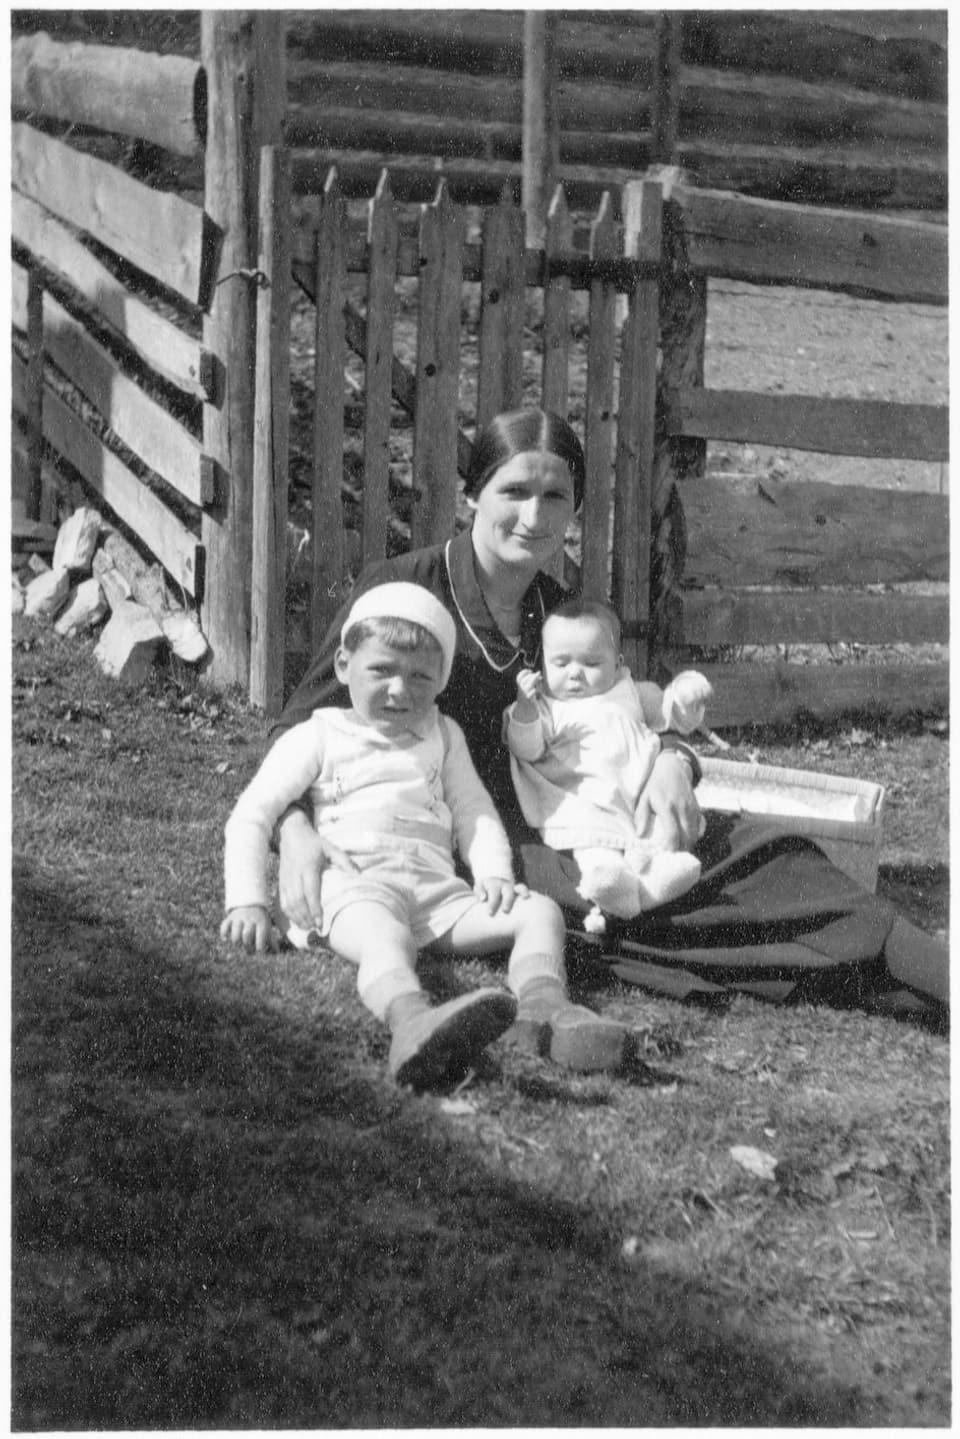 Schwarzweiss-Fotografie einer Frau mit zwei Kindern im Gras vor einem Zaun.